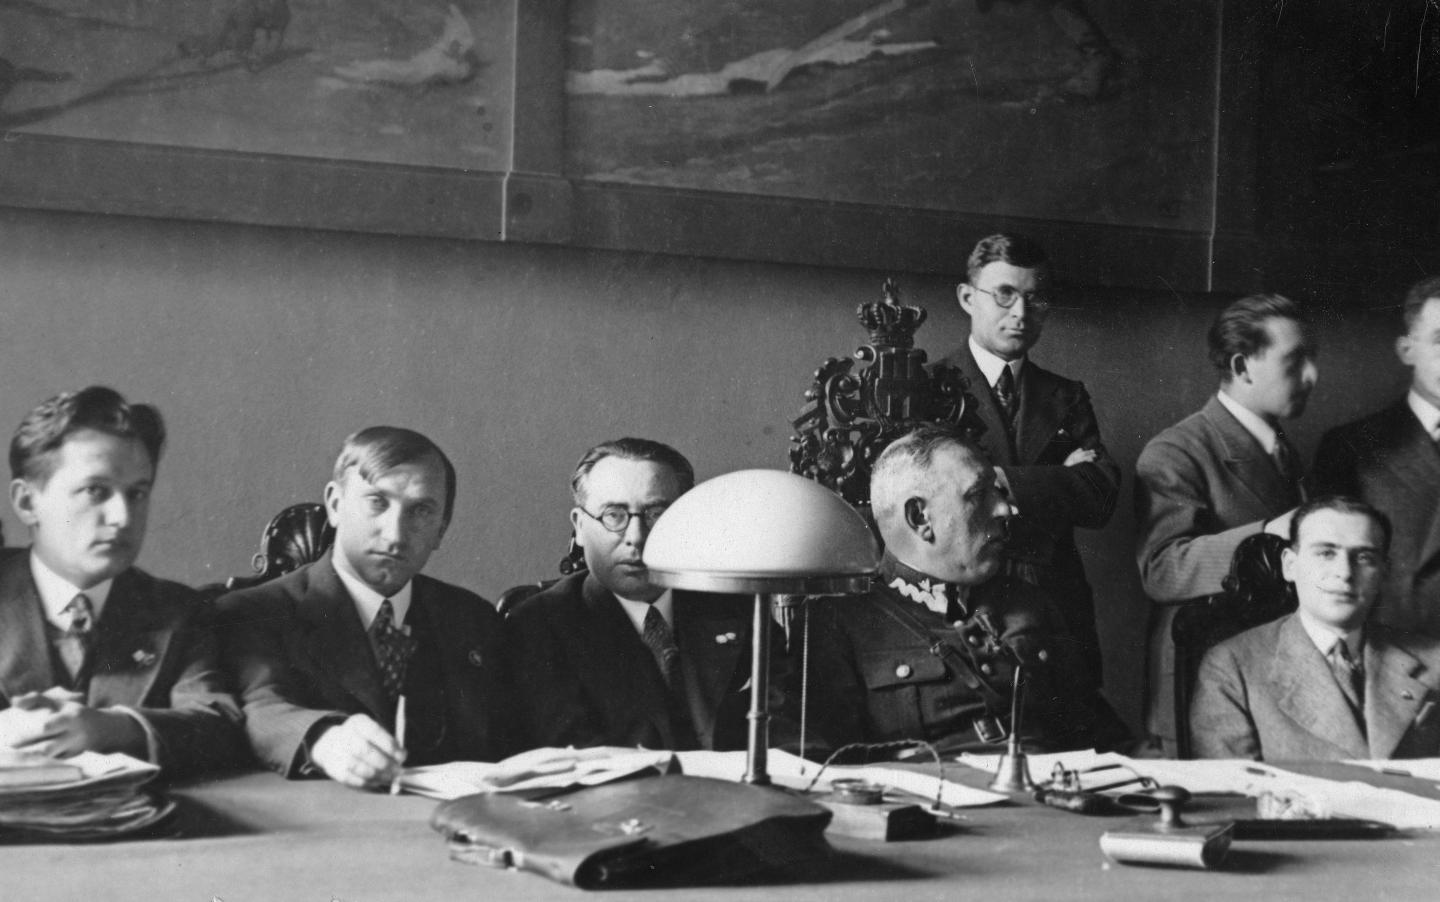 Styczeń 1934 roku. Józef Kałuża już w roli kapitana związkowego podczas zebrania działaczy PZPN. W garniturze też mu było do twarzy.